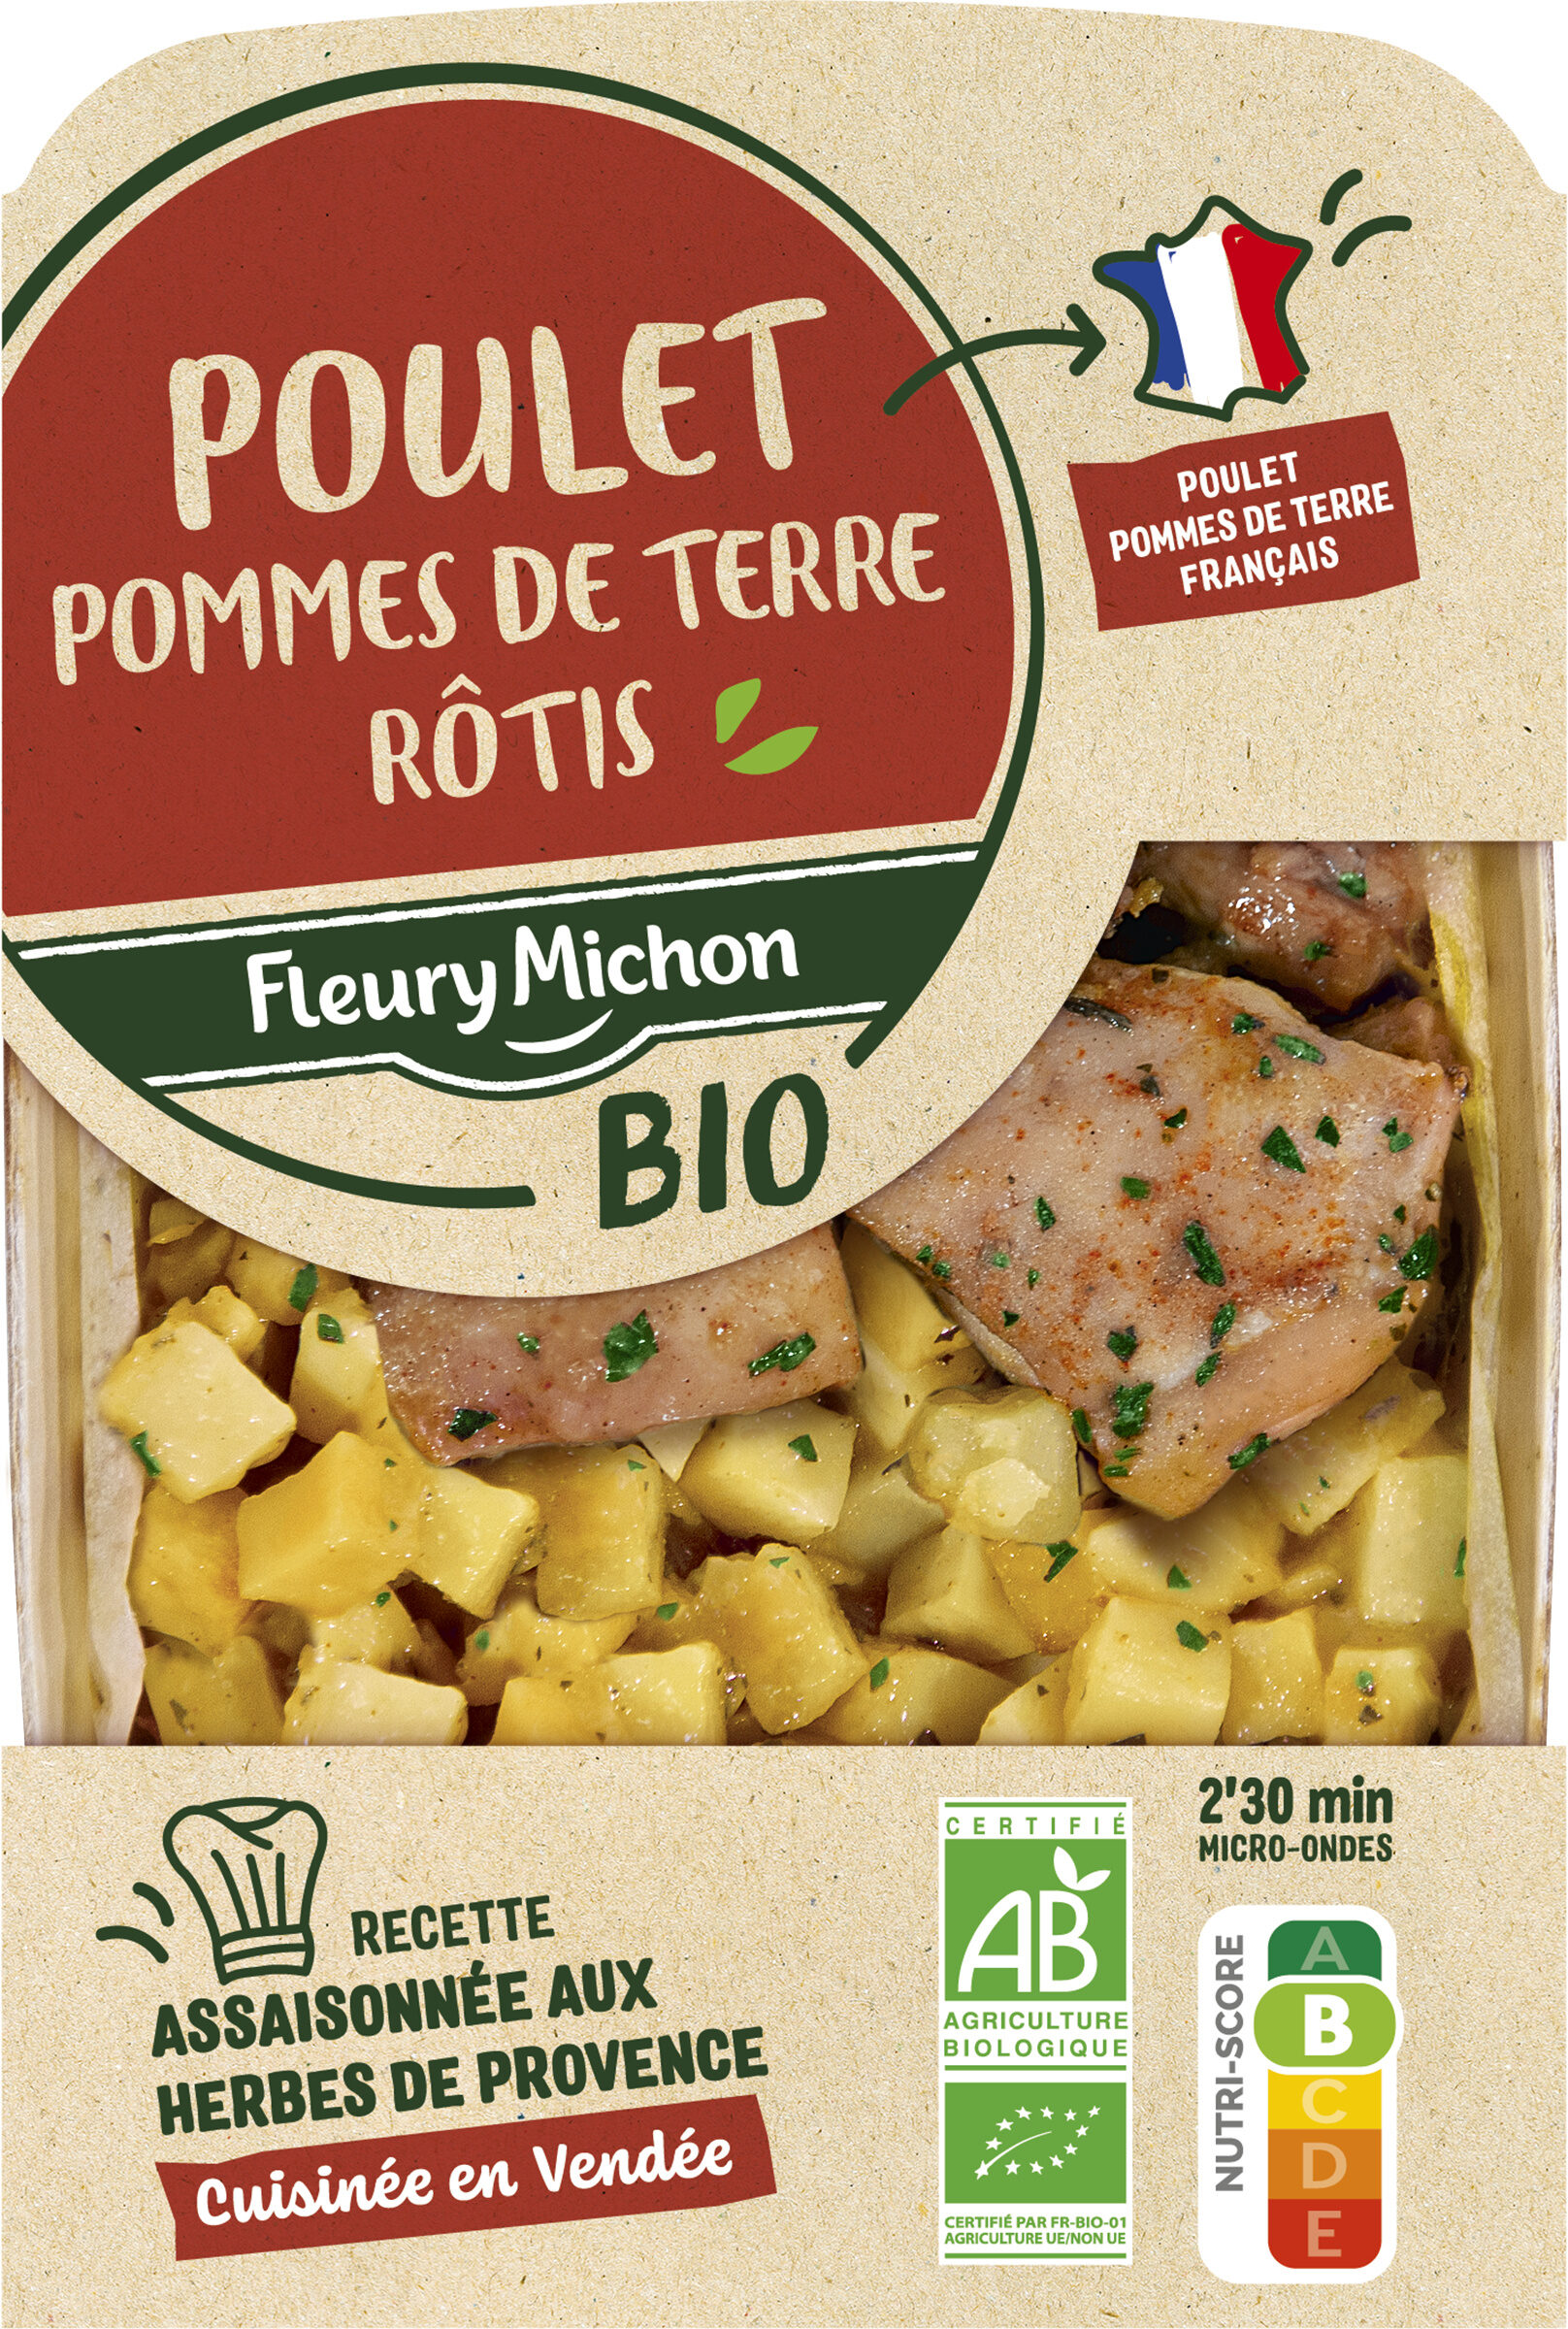 Poulet pommes de terre Rôtis - Product - fr